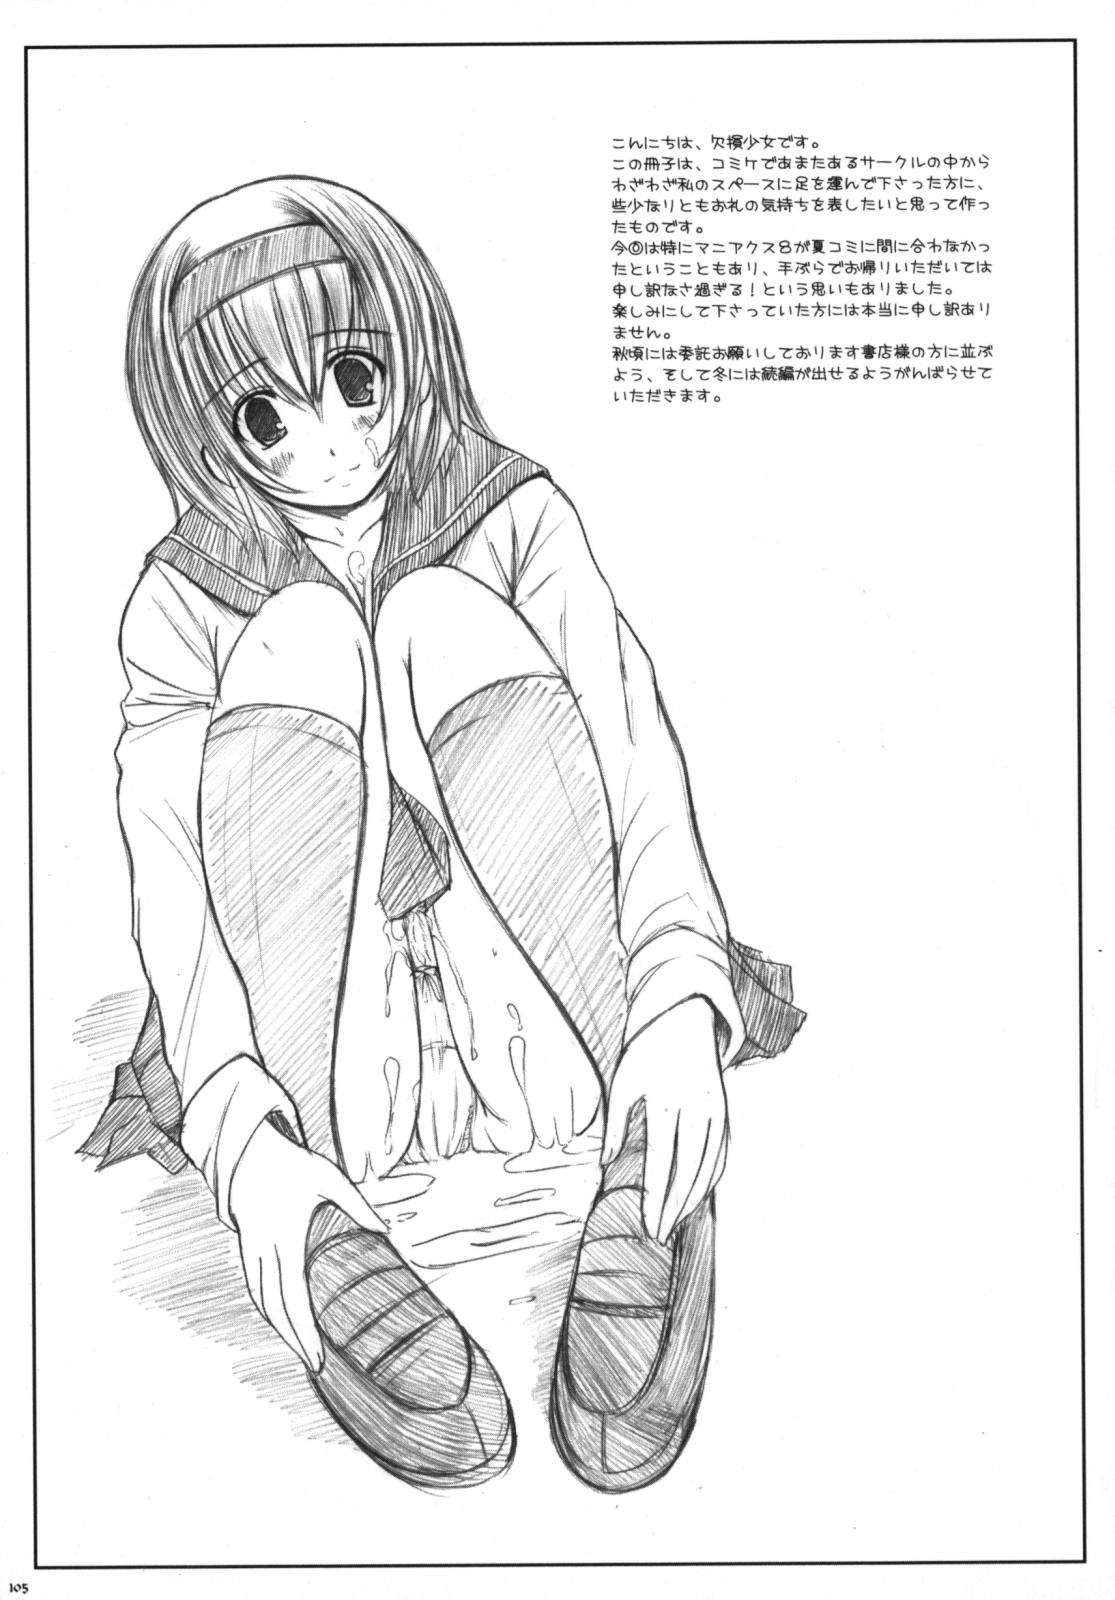 [Kesson Shoujo] Kesson Shoujo Memories 3 -Futanari Ero Manga- 105